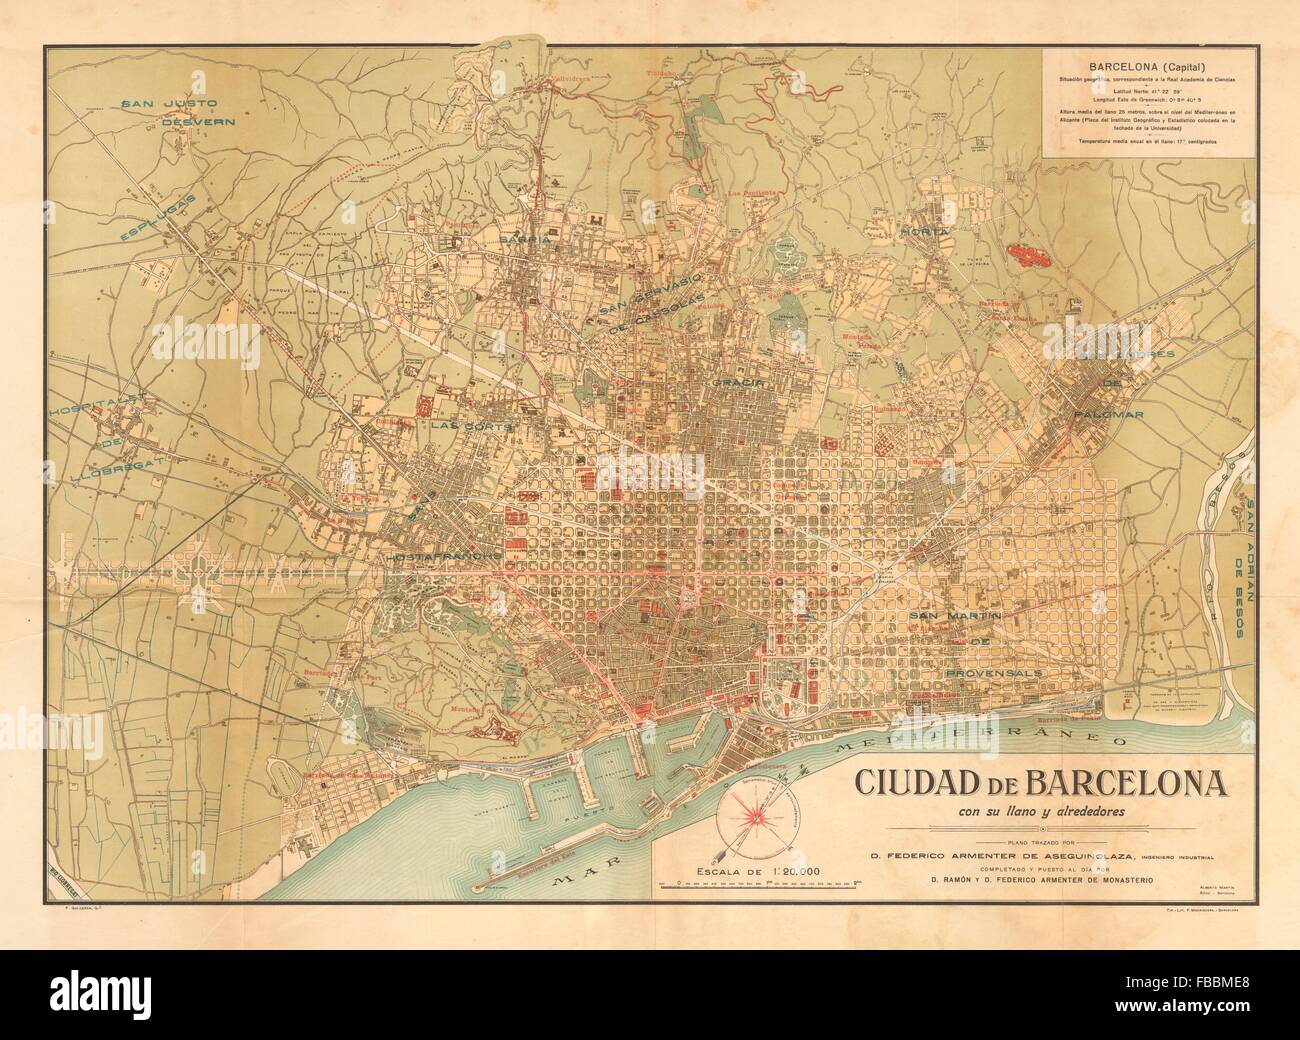 Antique town/city plan MARTIN c1911 map Plano antiguo de la cuidad CADIZ 